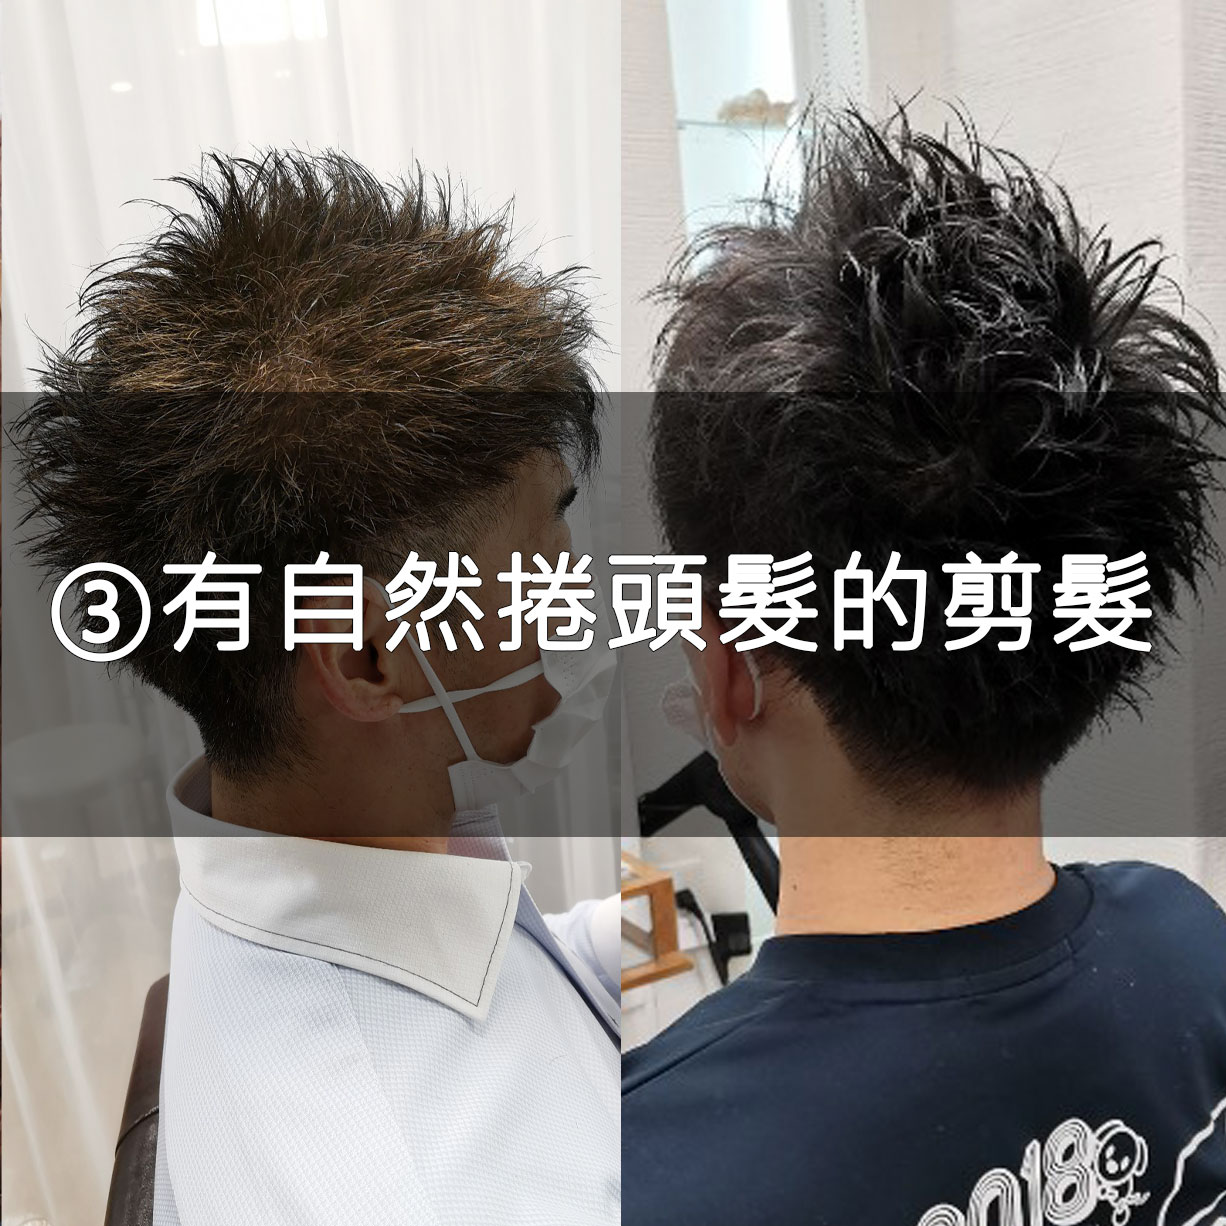 台北松山區日本美髮沙龍的為有自然倦剪髮